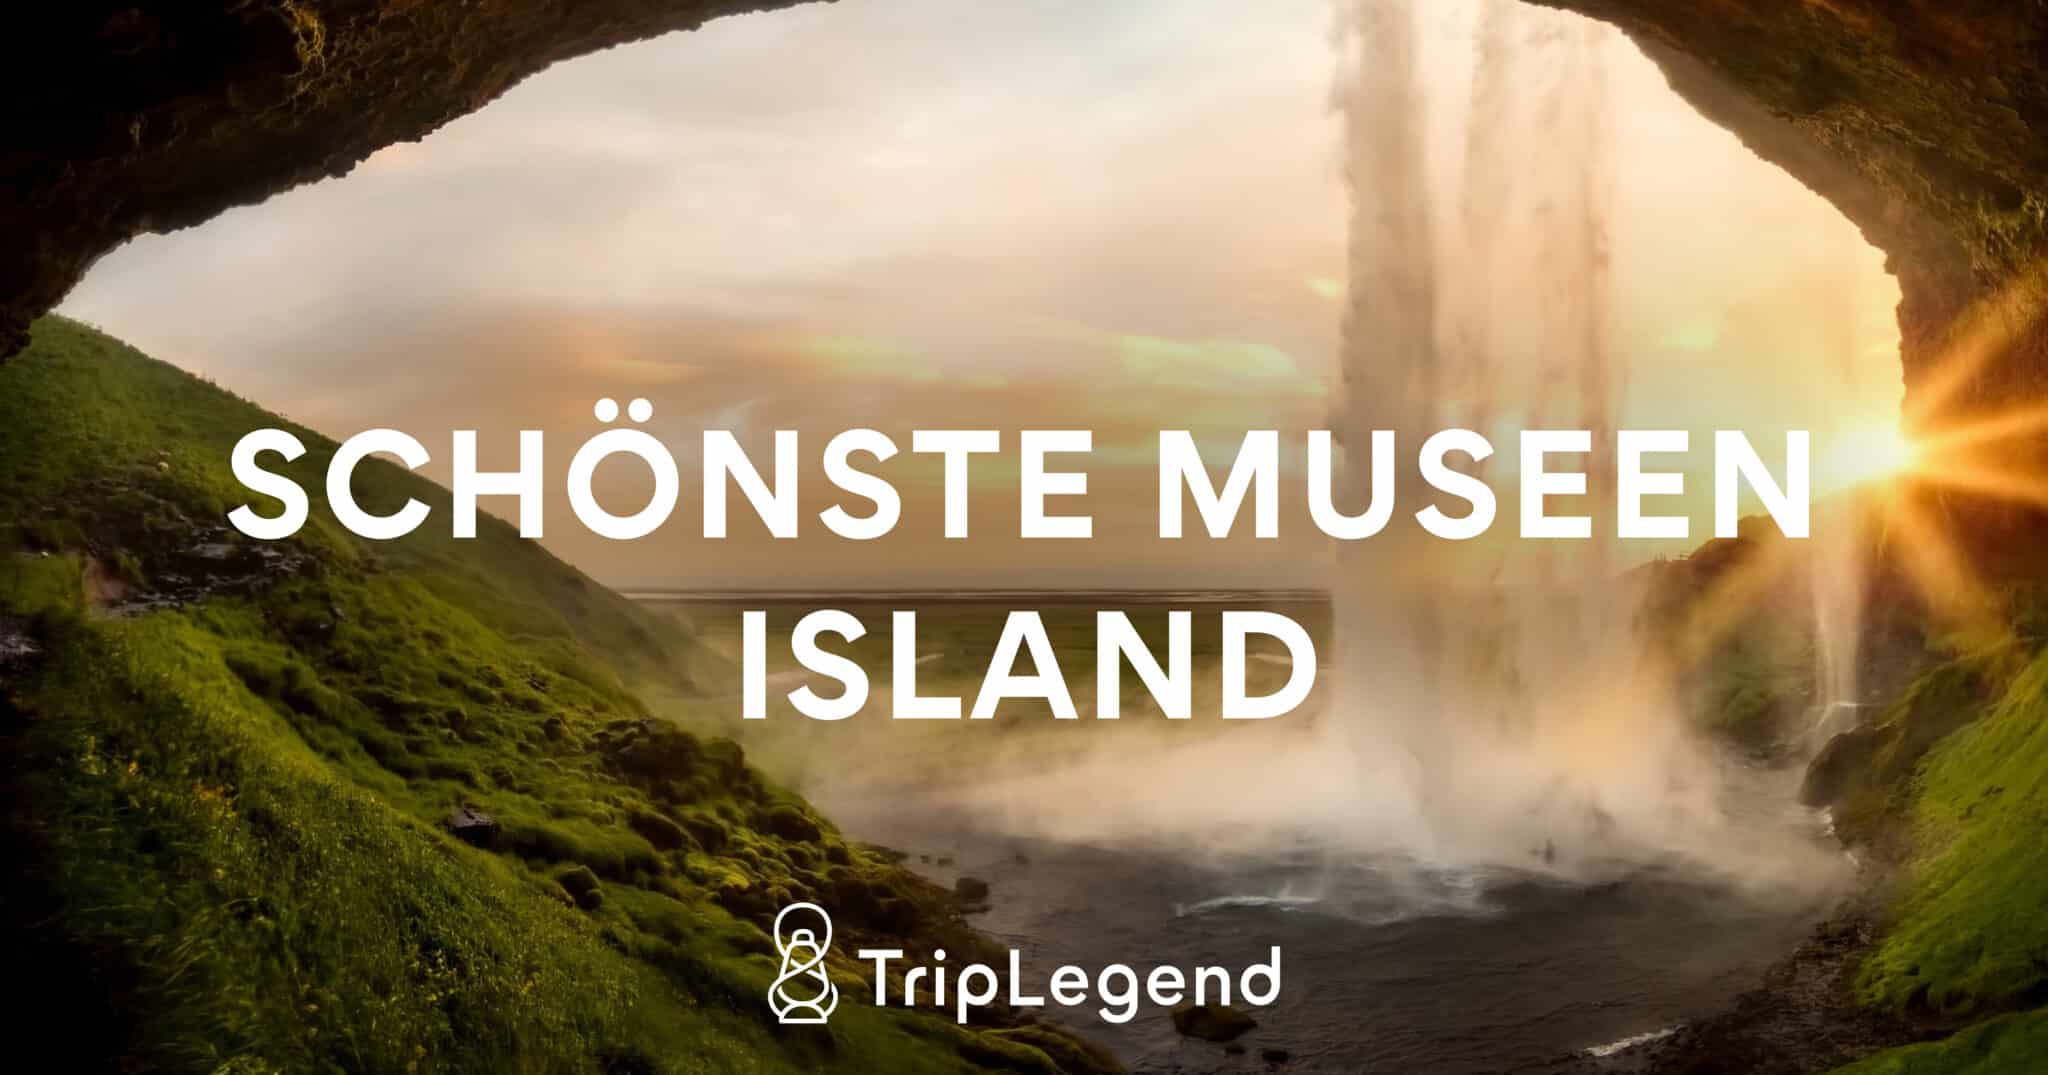 Islannin kauneimmat museot